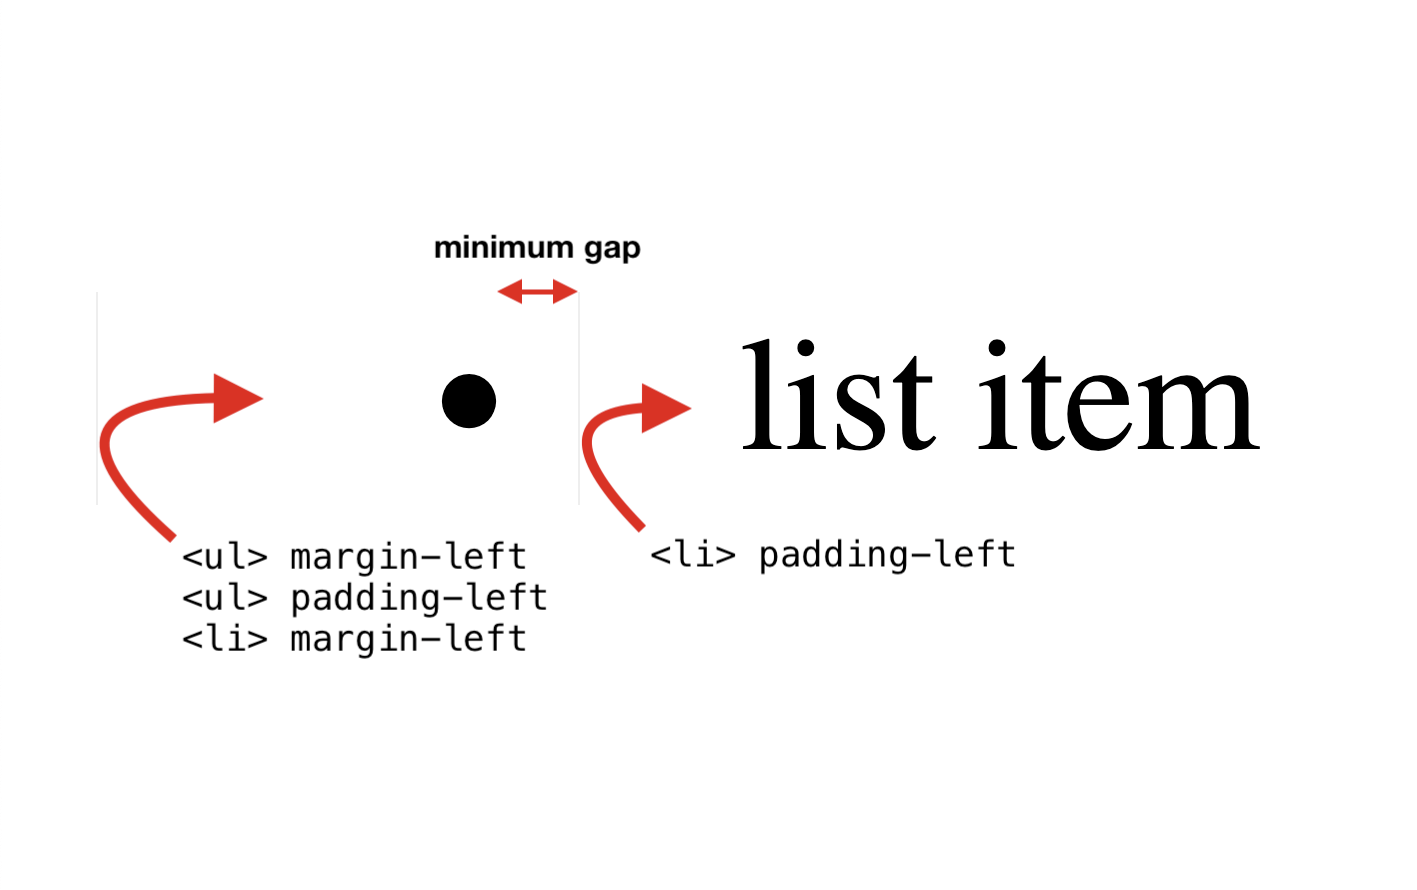 שלושת המאפיינים הראשונים: UL margin-left, UL padding-left, LI margin-left. מאפיין רביעי: ריפוד LI-שמאלי.